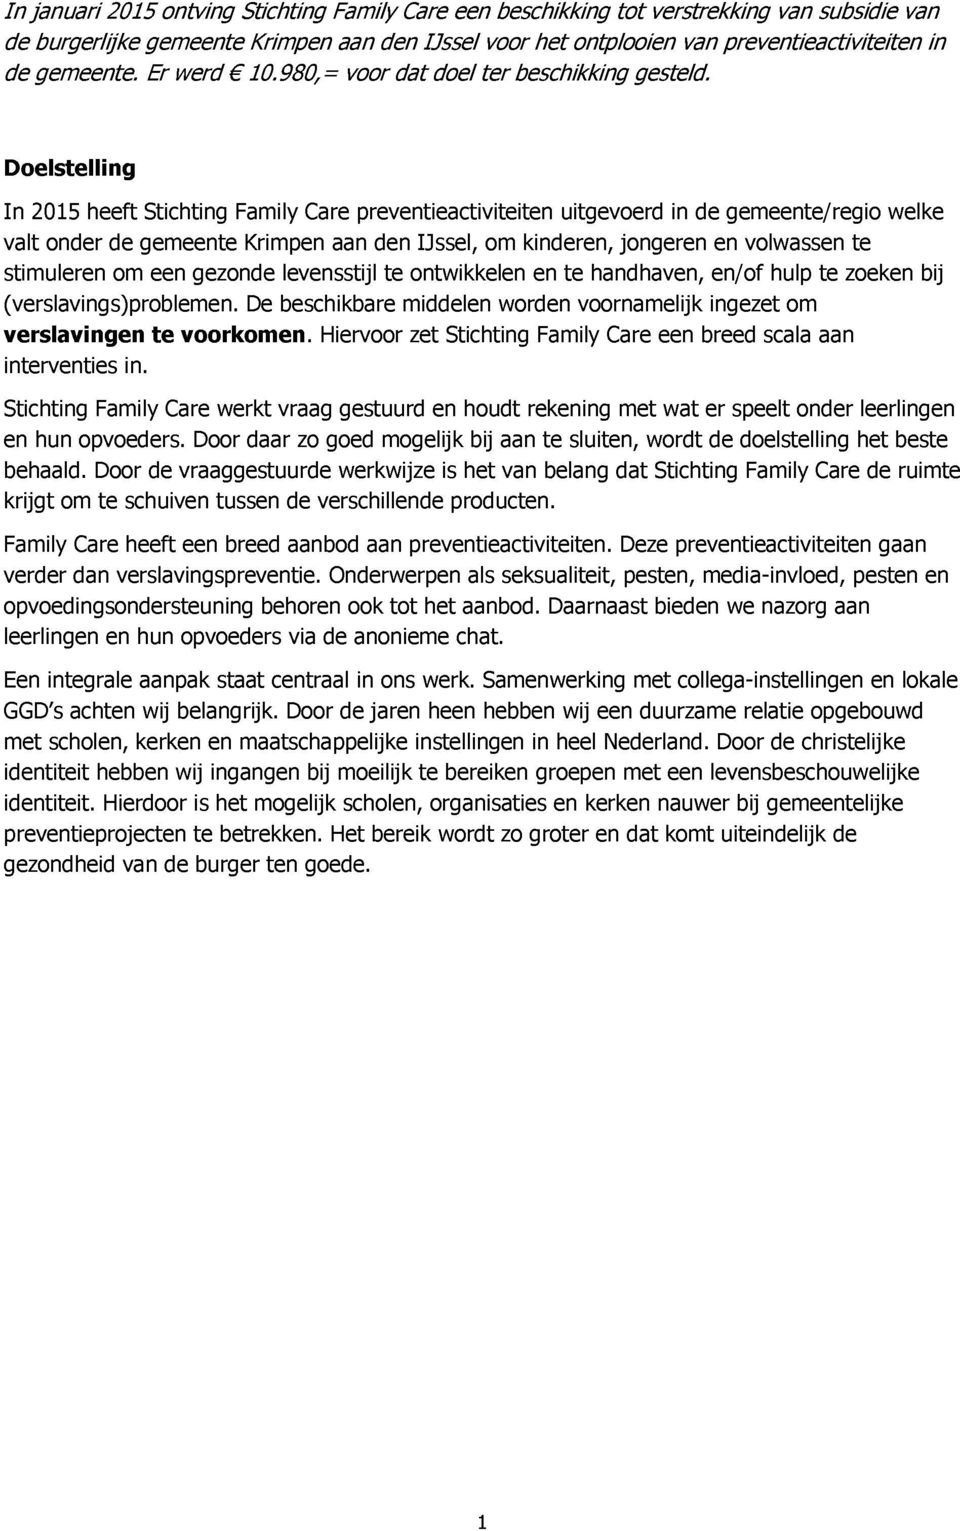 Doelstelling In 2015 heeft Stichting Family Care preventieactiviteiten uitgevoerd in de gemeente/regio welke valt onder de gemeente Krimpen aan den IJssel, om kinderen, jongeren en volwassen te